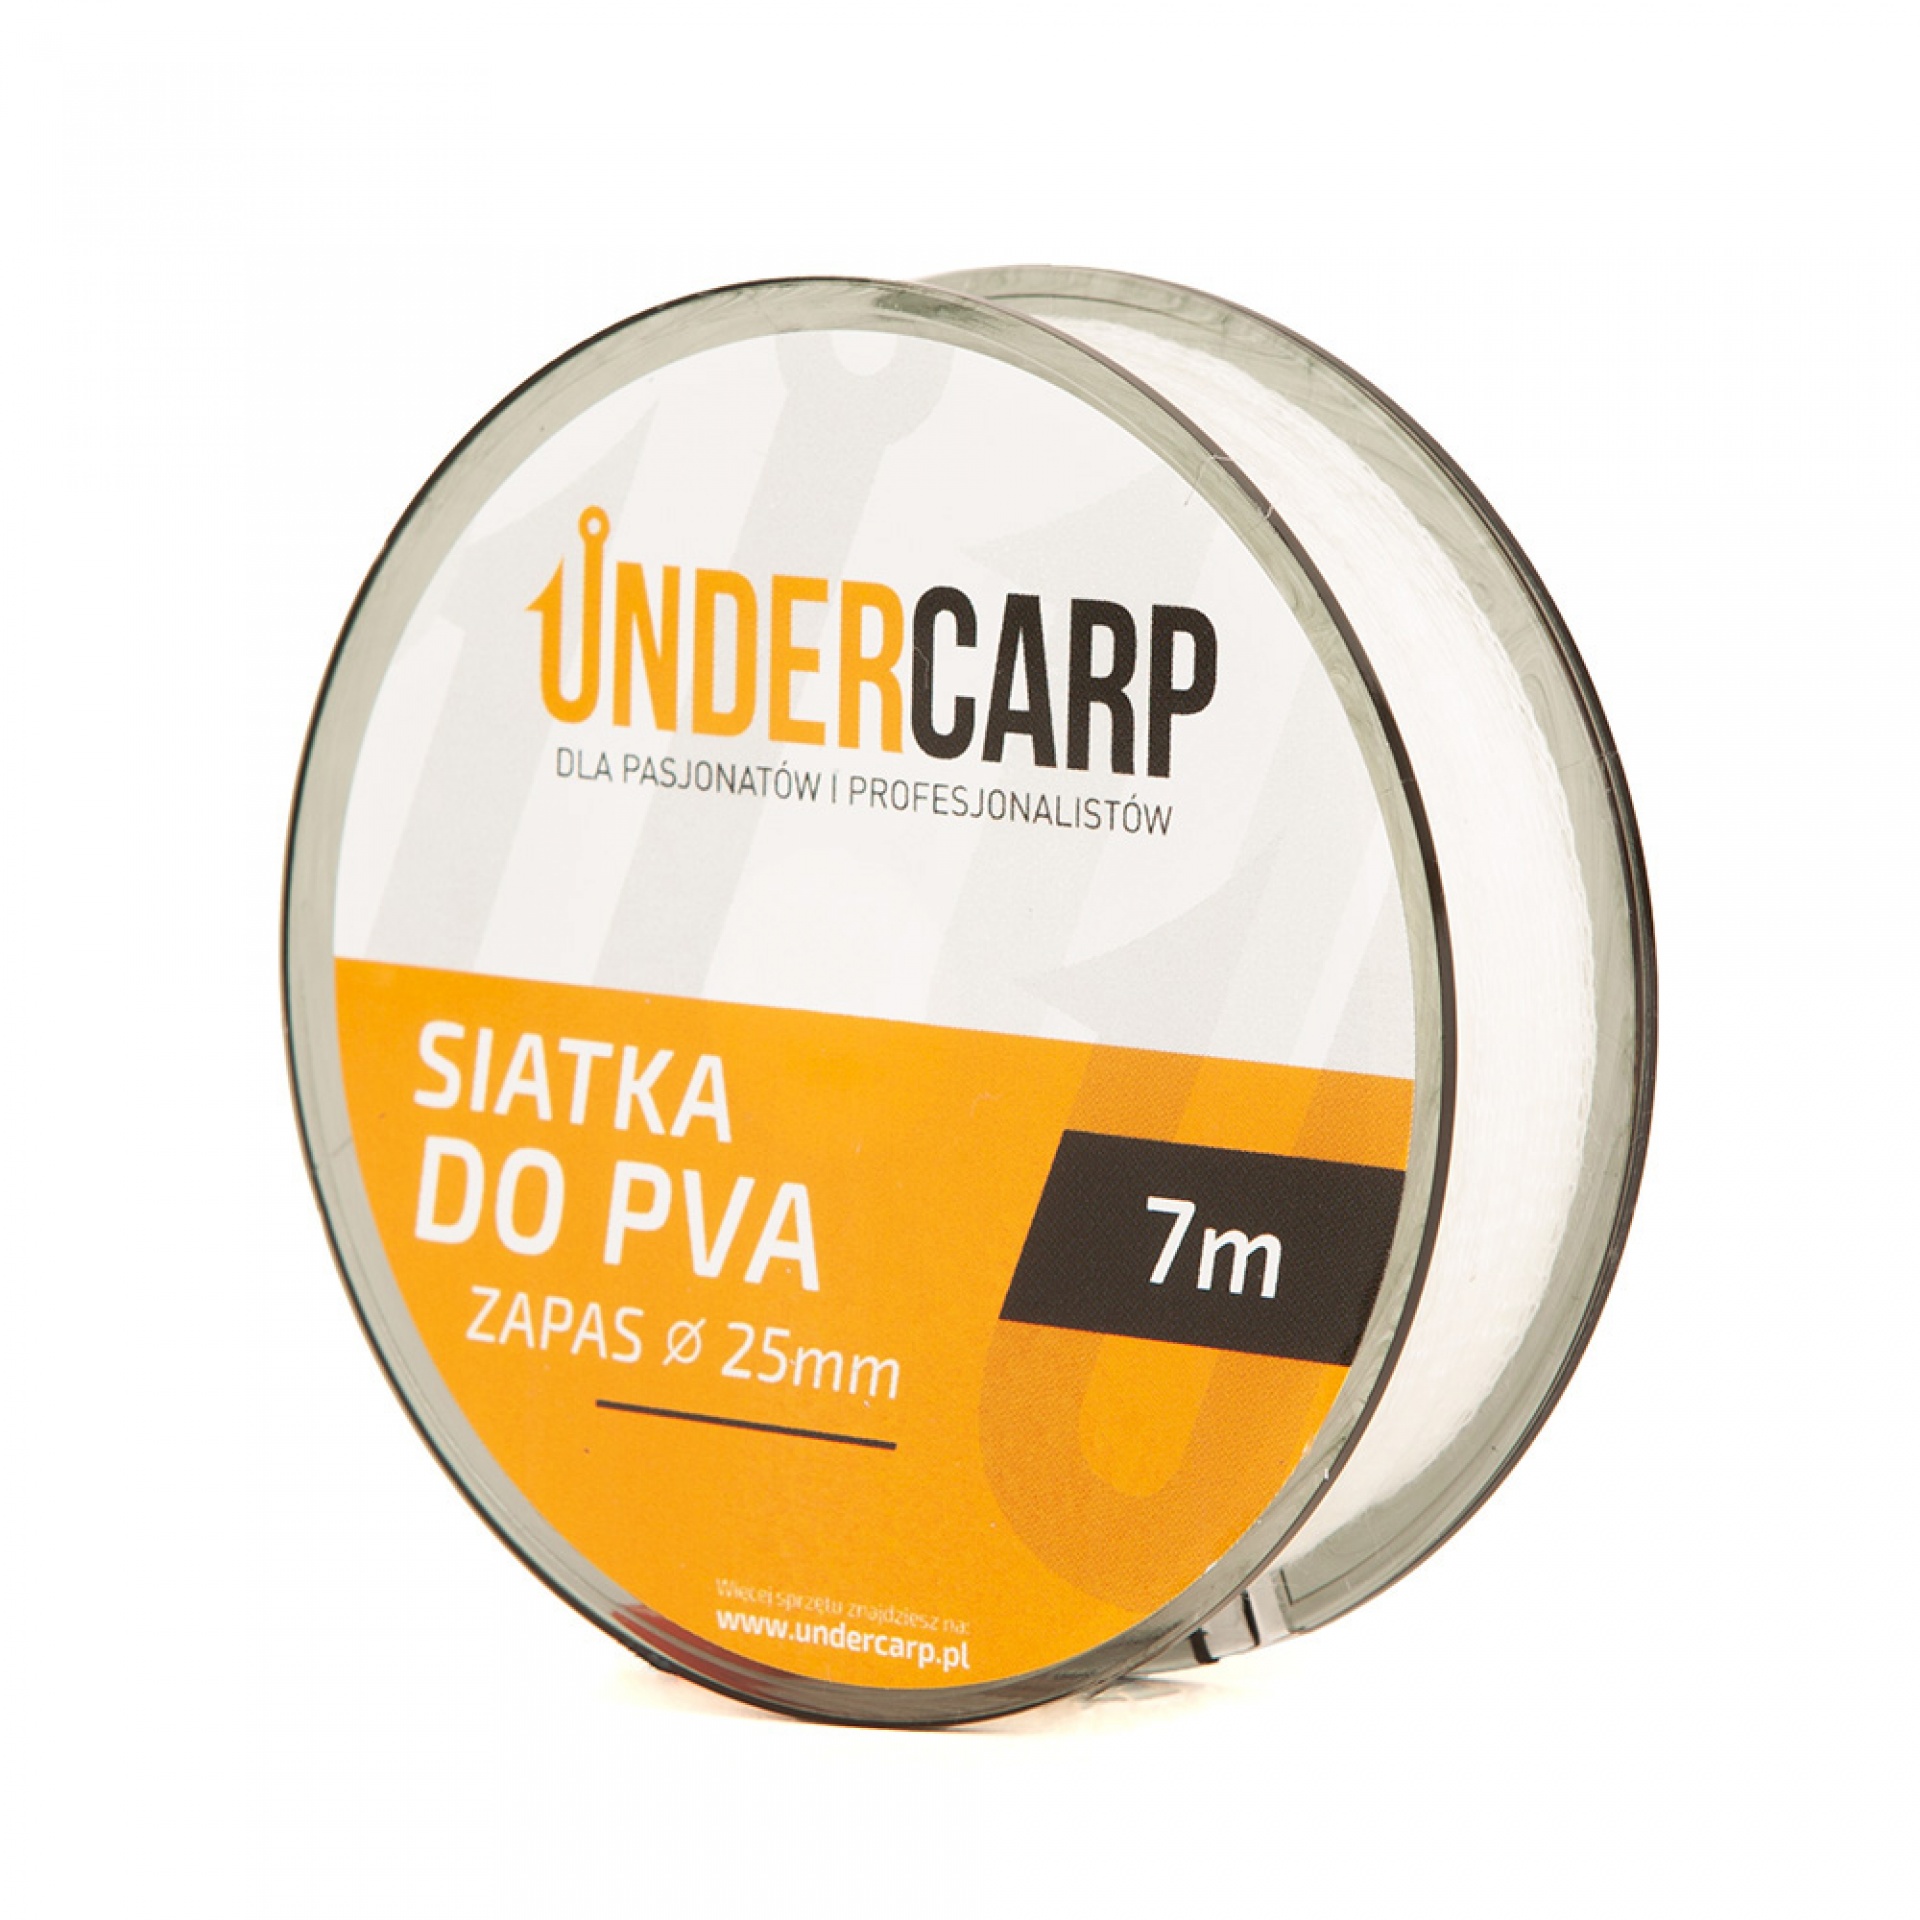 UnderCarp - Tartalék PVA háló 25mm 7m